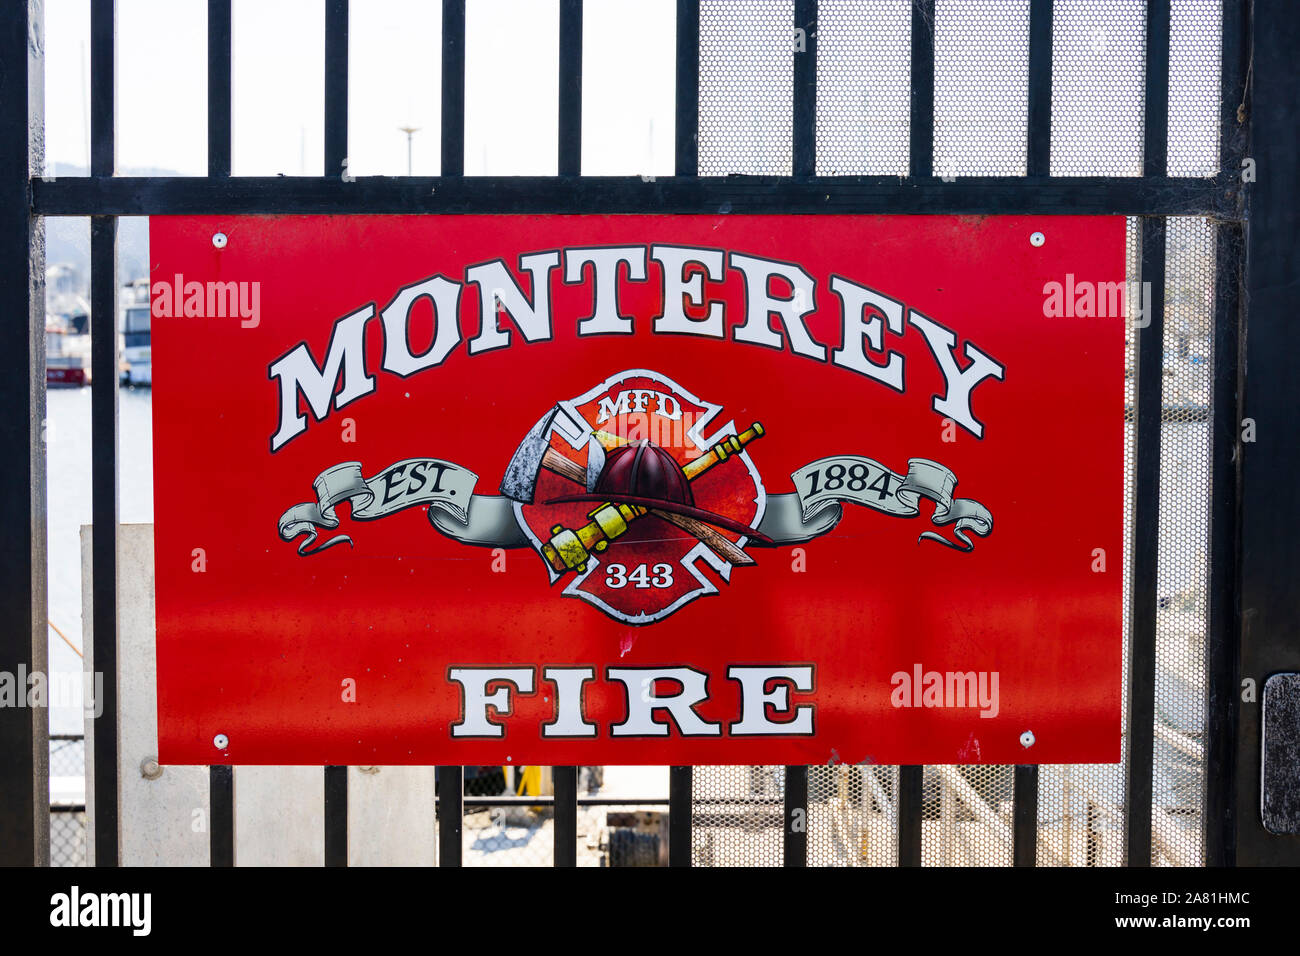 Monterey Fire Dept unterzeichnen, Küstenwache pier, Fishermans Wharf, Monterey, Kalifornien, Vereinigte Staaten von Amerika. Stockfoto